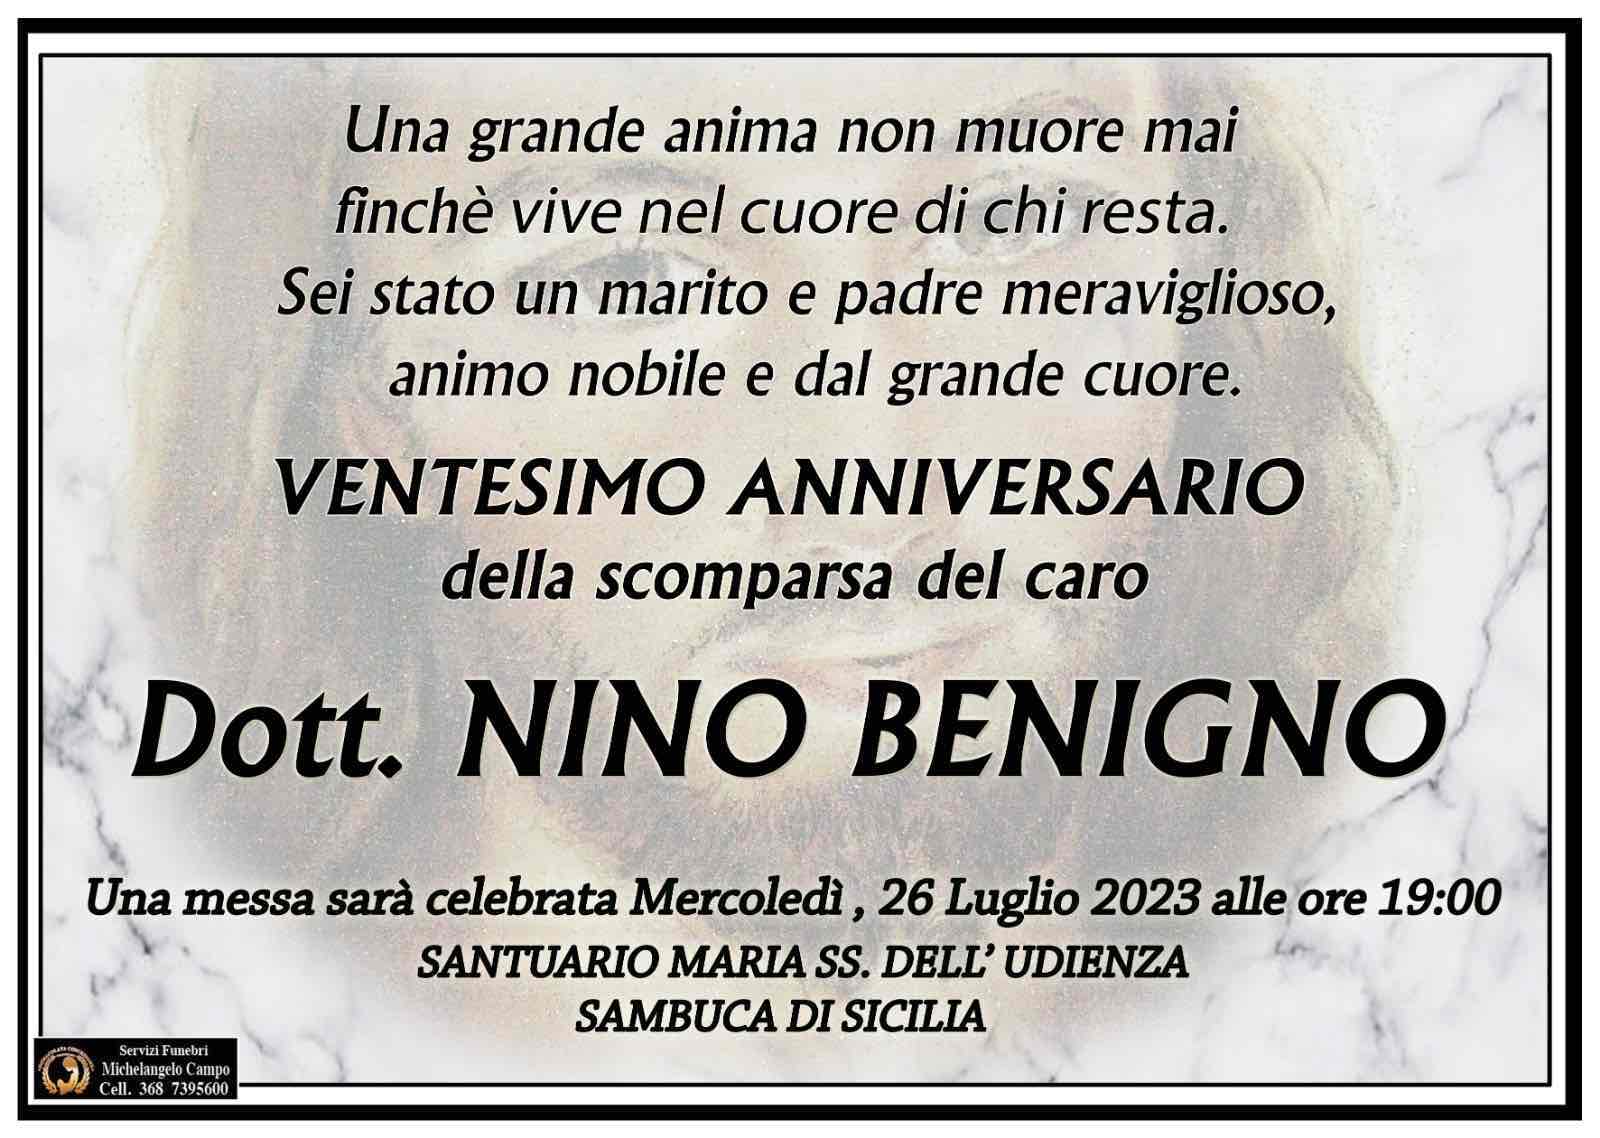 Dott Nino Benigno